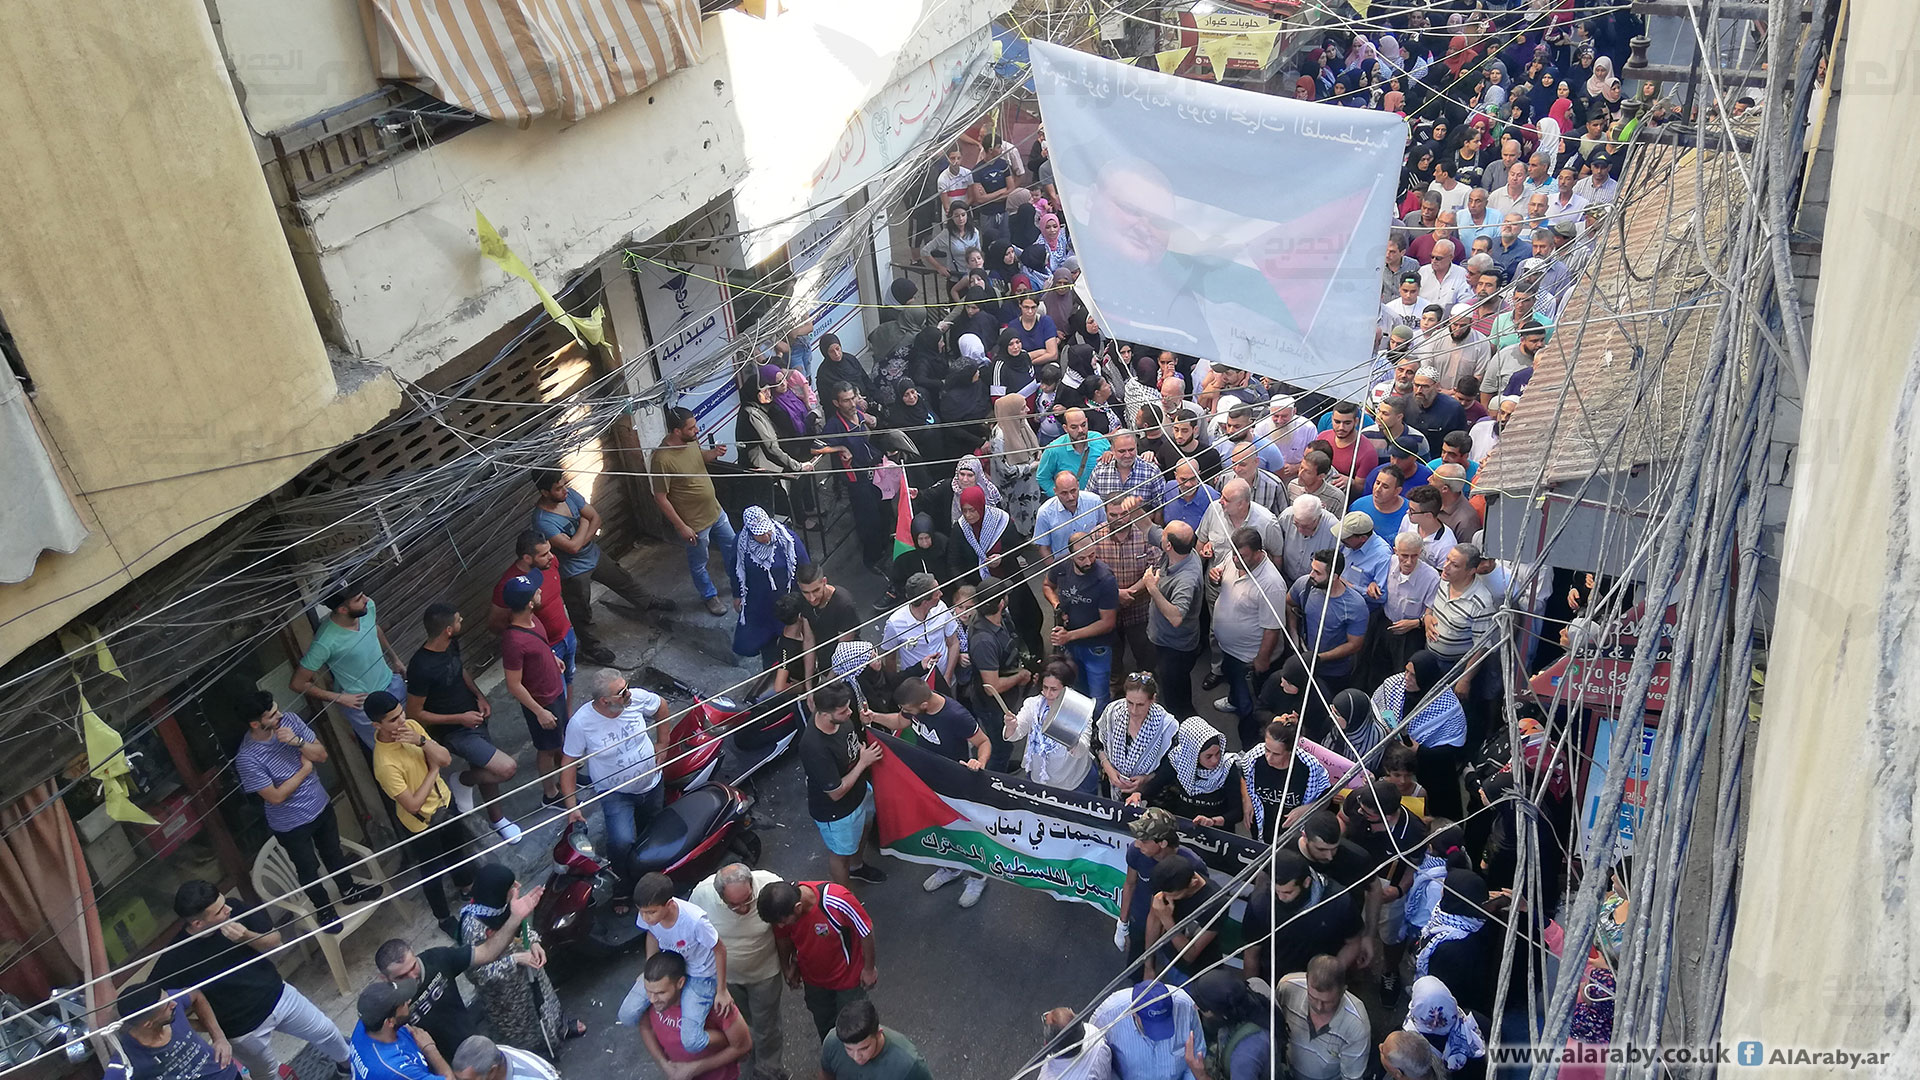  مسيرات فلسطينية غاضبة في مخيمات لبنان ضد قانون العمل